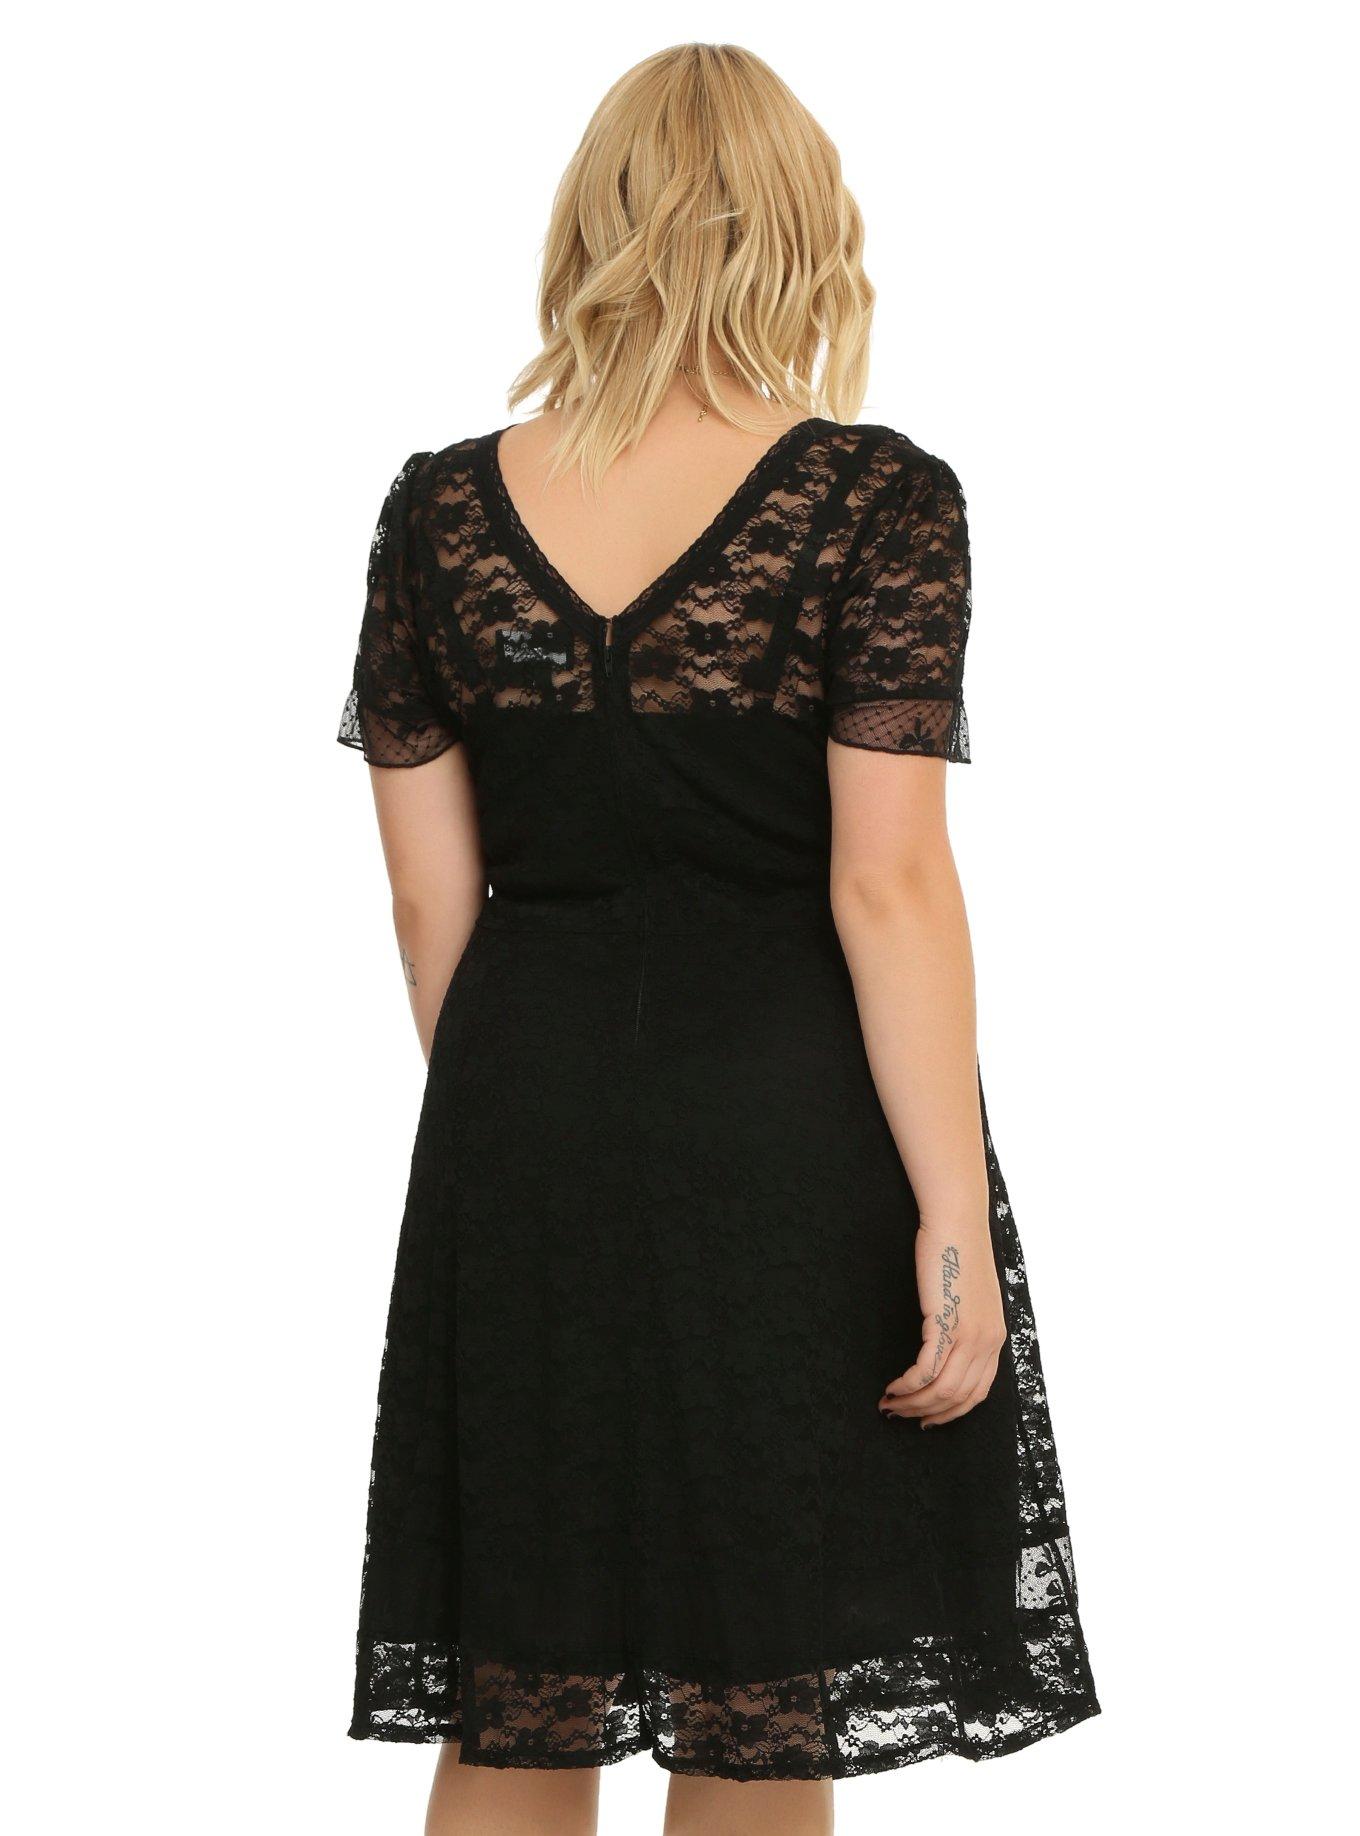 Royal Bones By Tripp Black Lace Dress Plus Size, , alternate